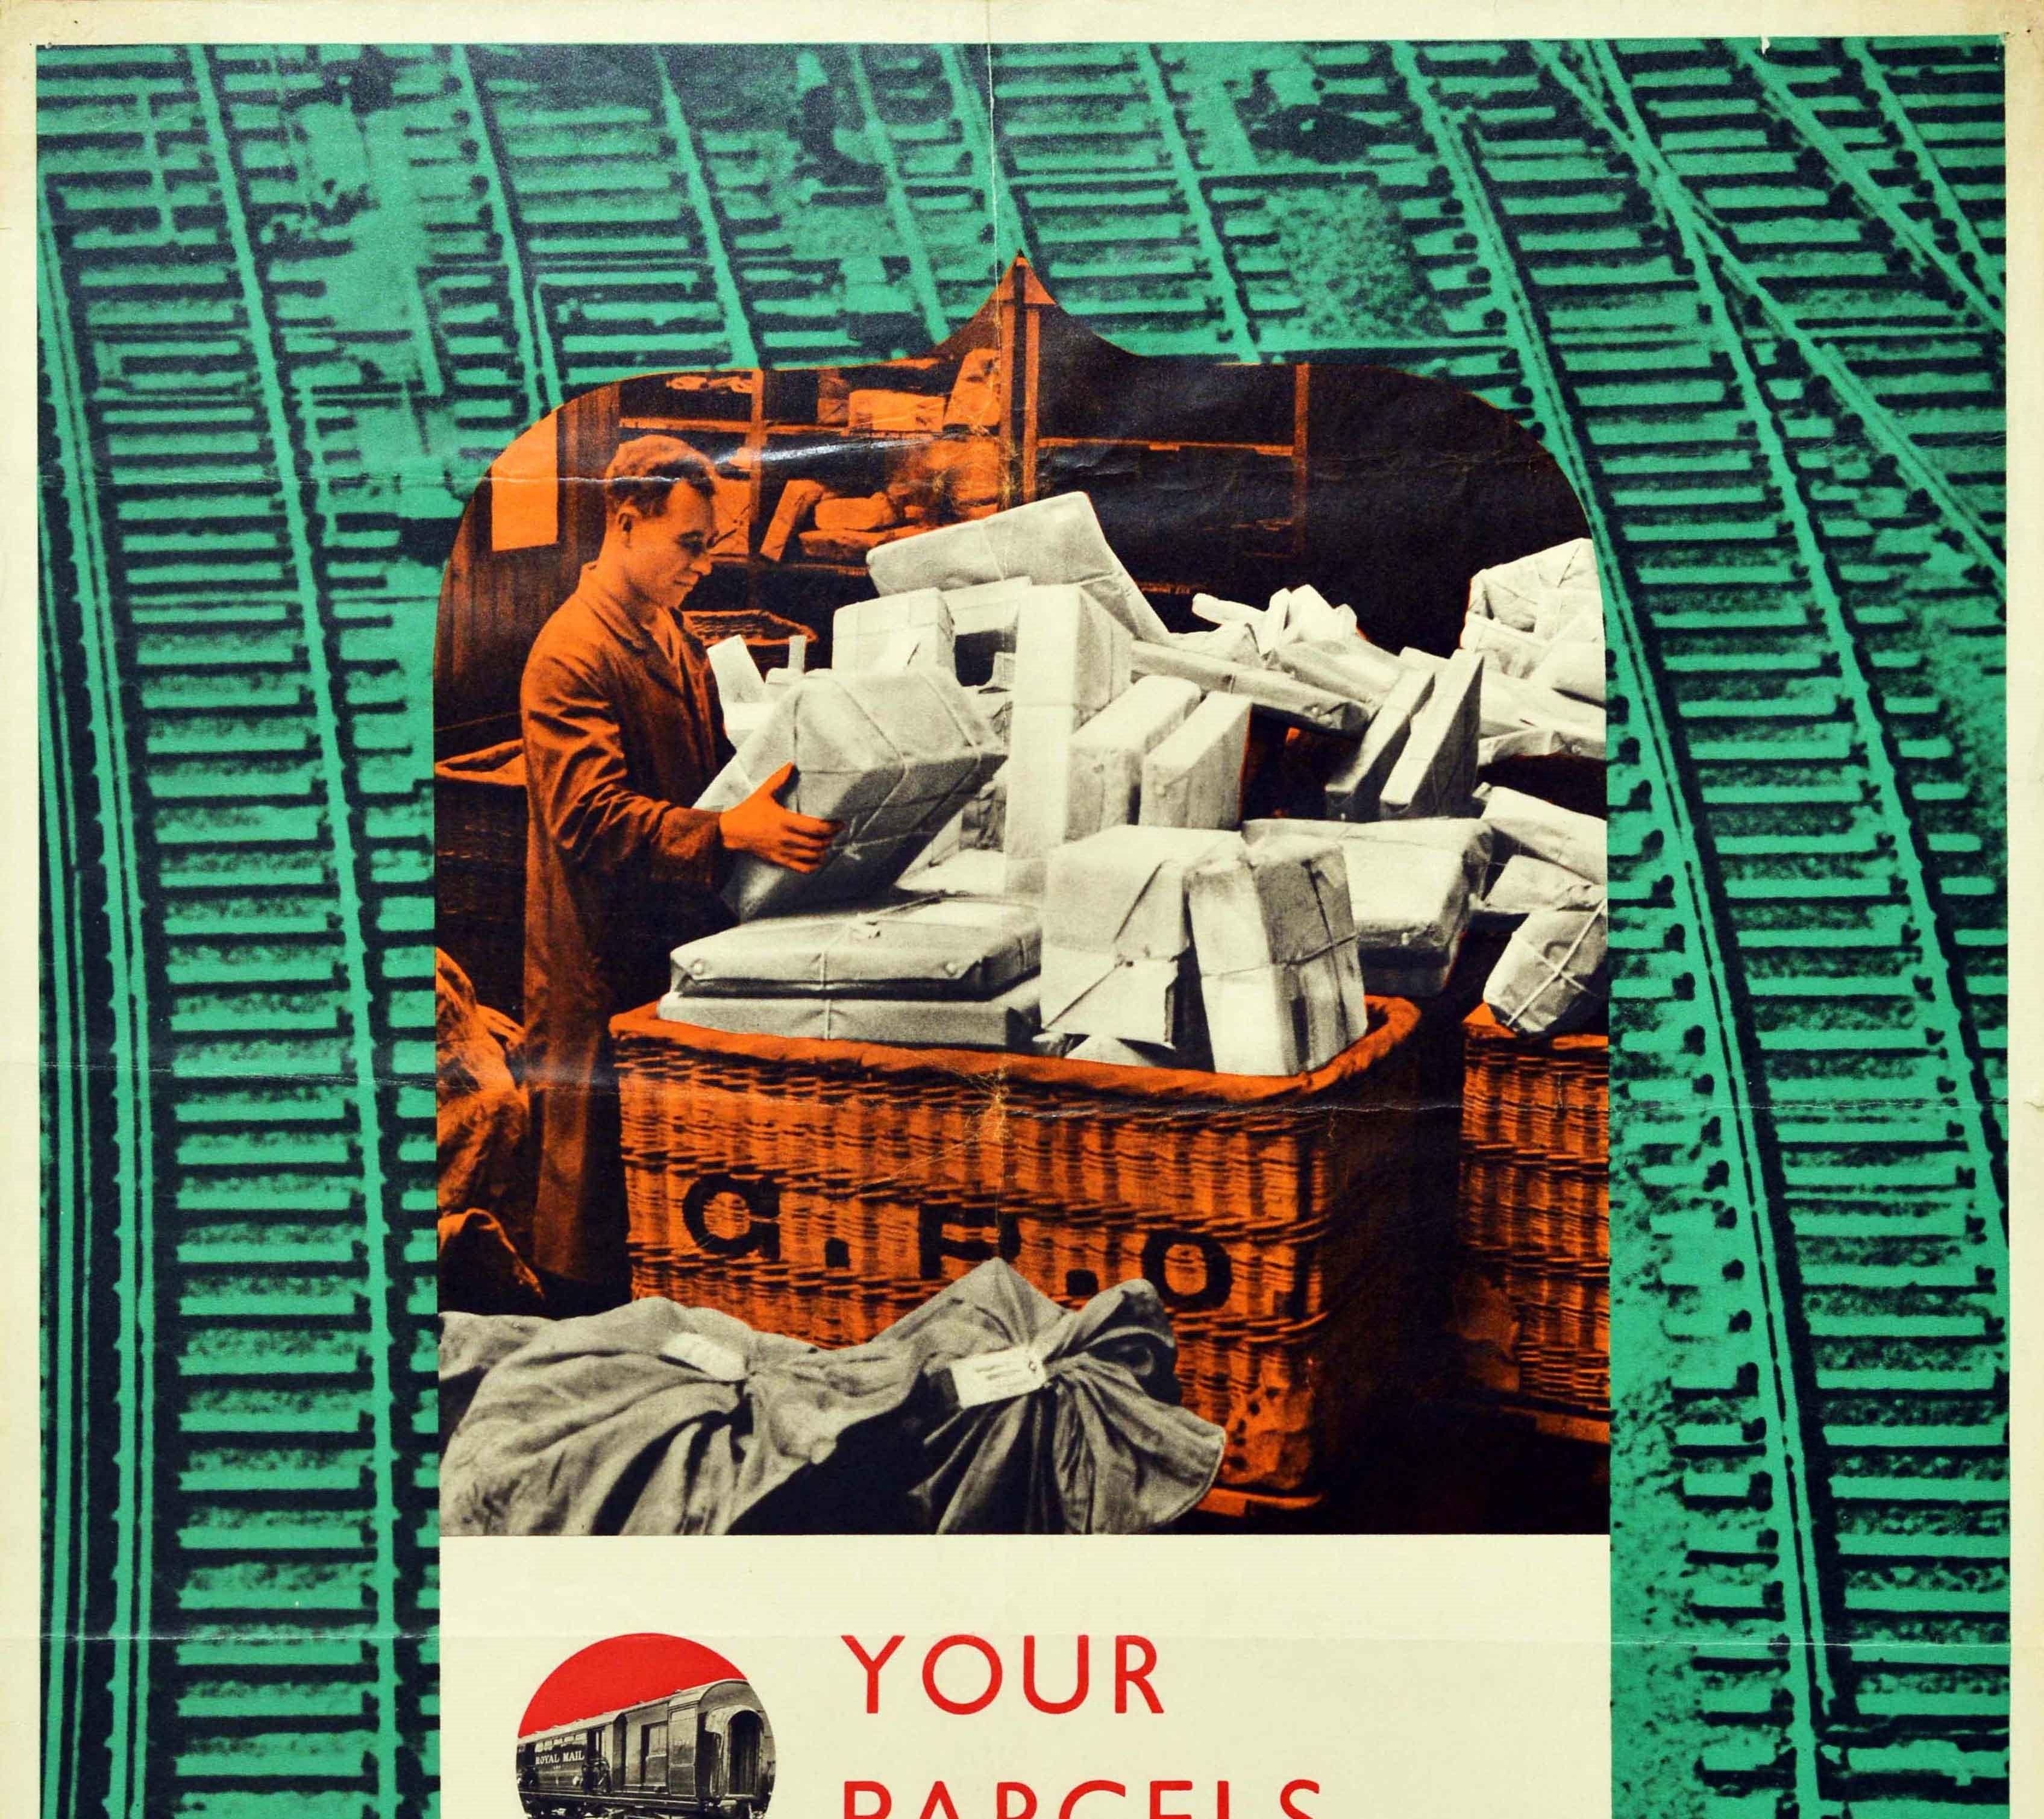 Original Vintage-Propagandaplakat, das während des Zweiten Weltkriegs von der Britischen Eisenbahn gedruckt wurde - Your Parcels and Letters Depend on the Lines Behind the Lines - eines aus einer Reihe von Kriegsplakaten, die die Bedeutung der